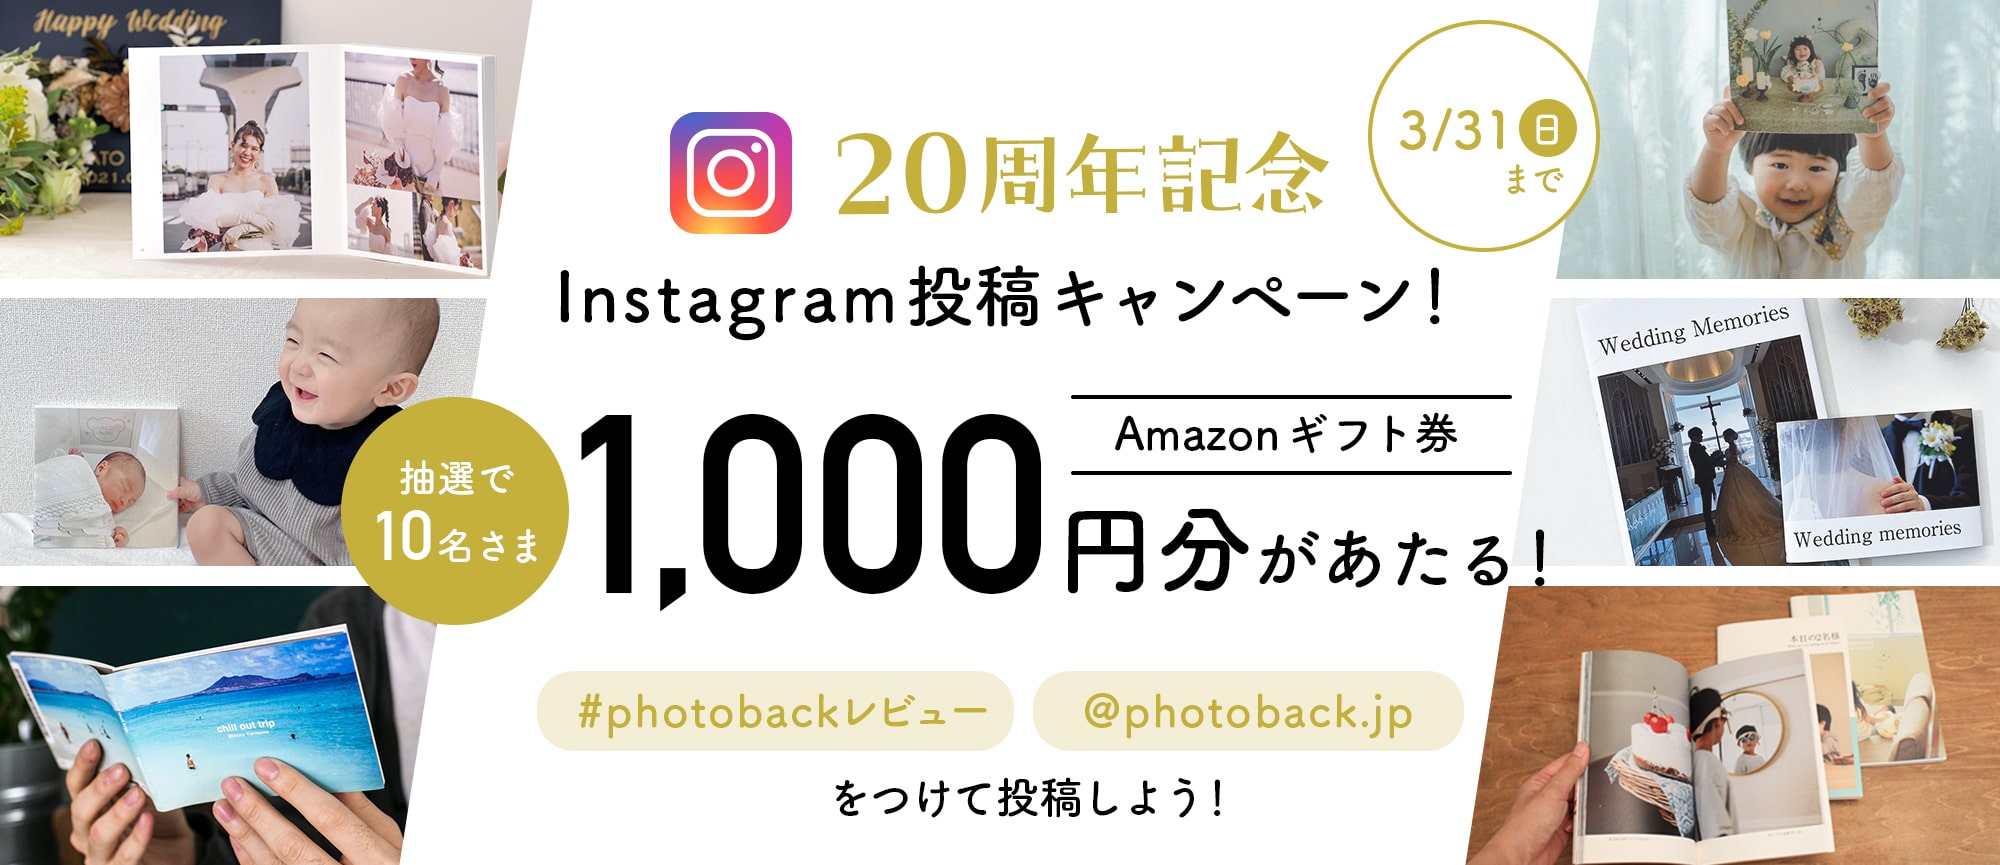 20周年記念Instagram投稿キャンペーン